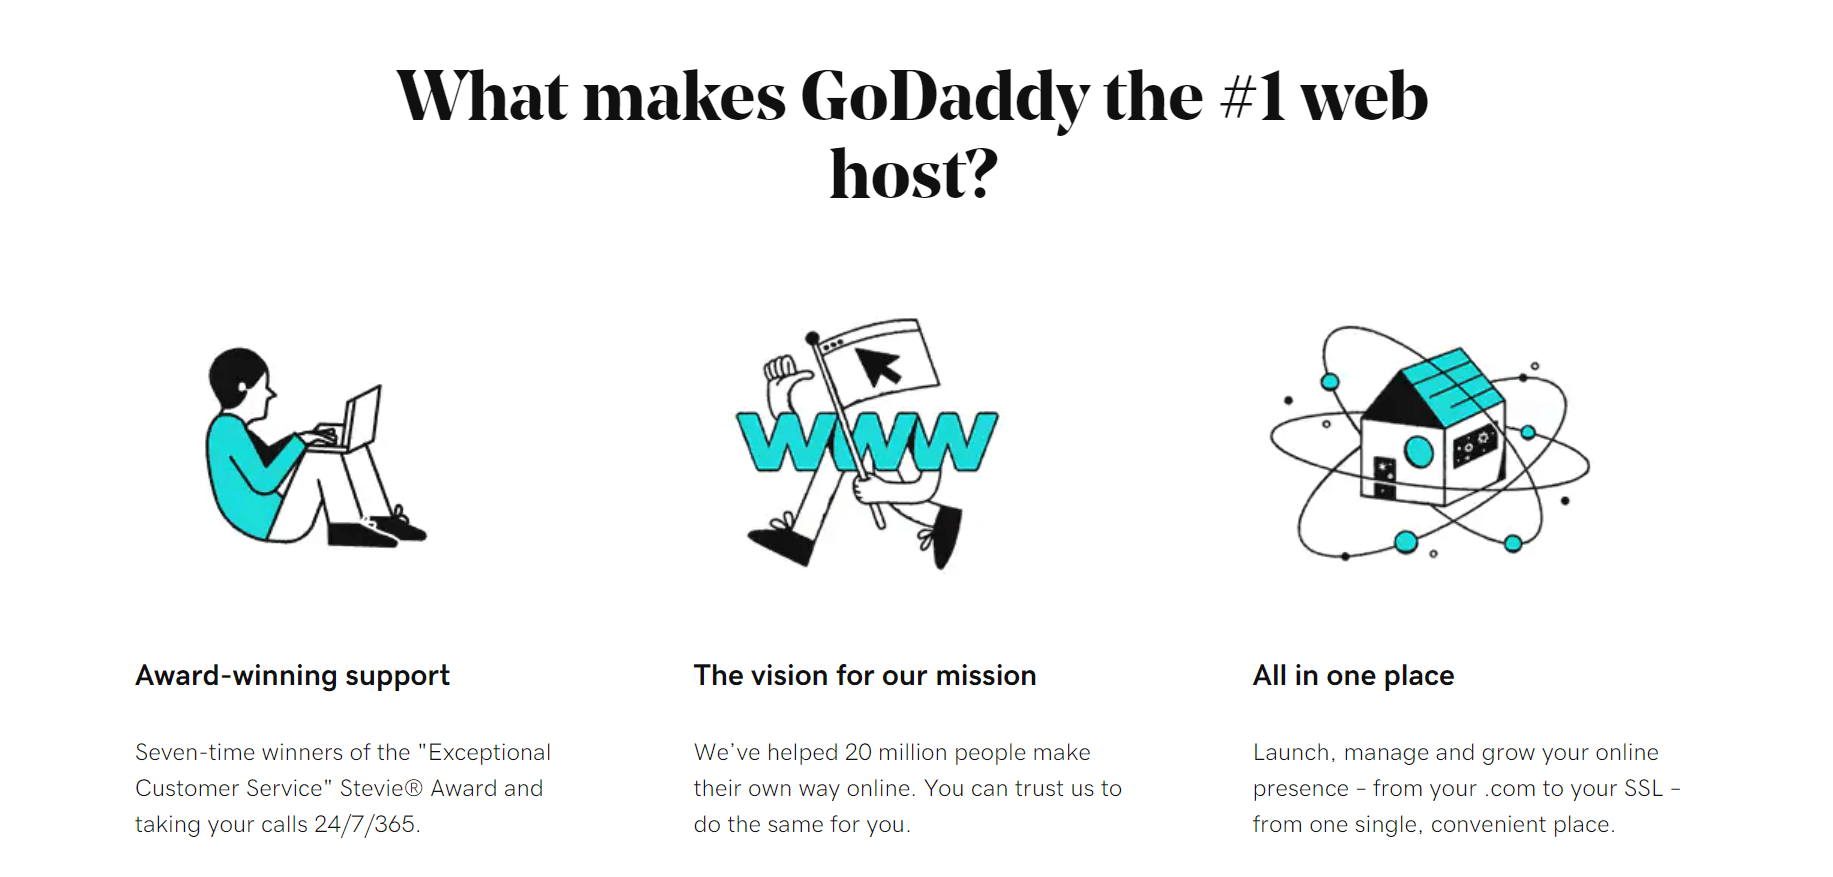 Godaddy hosting review